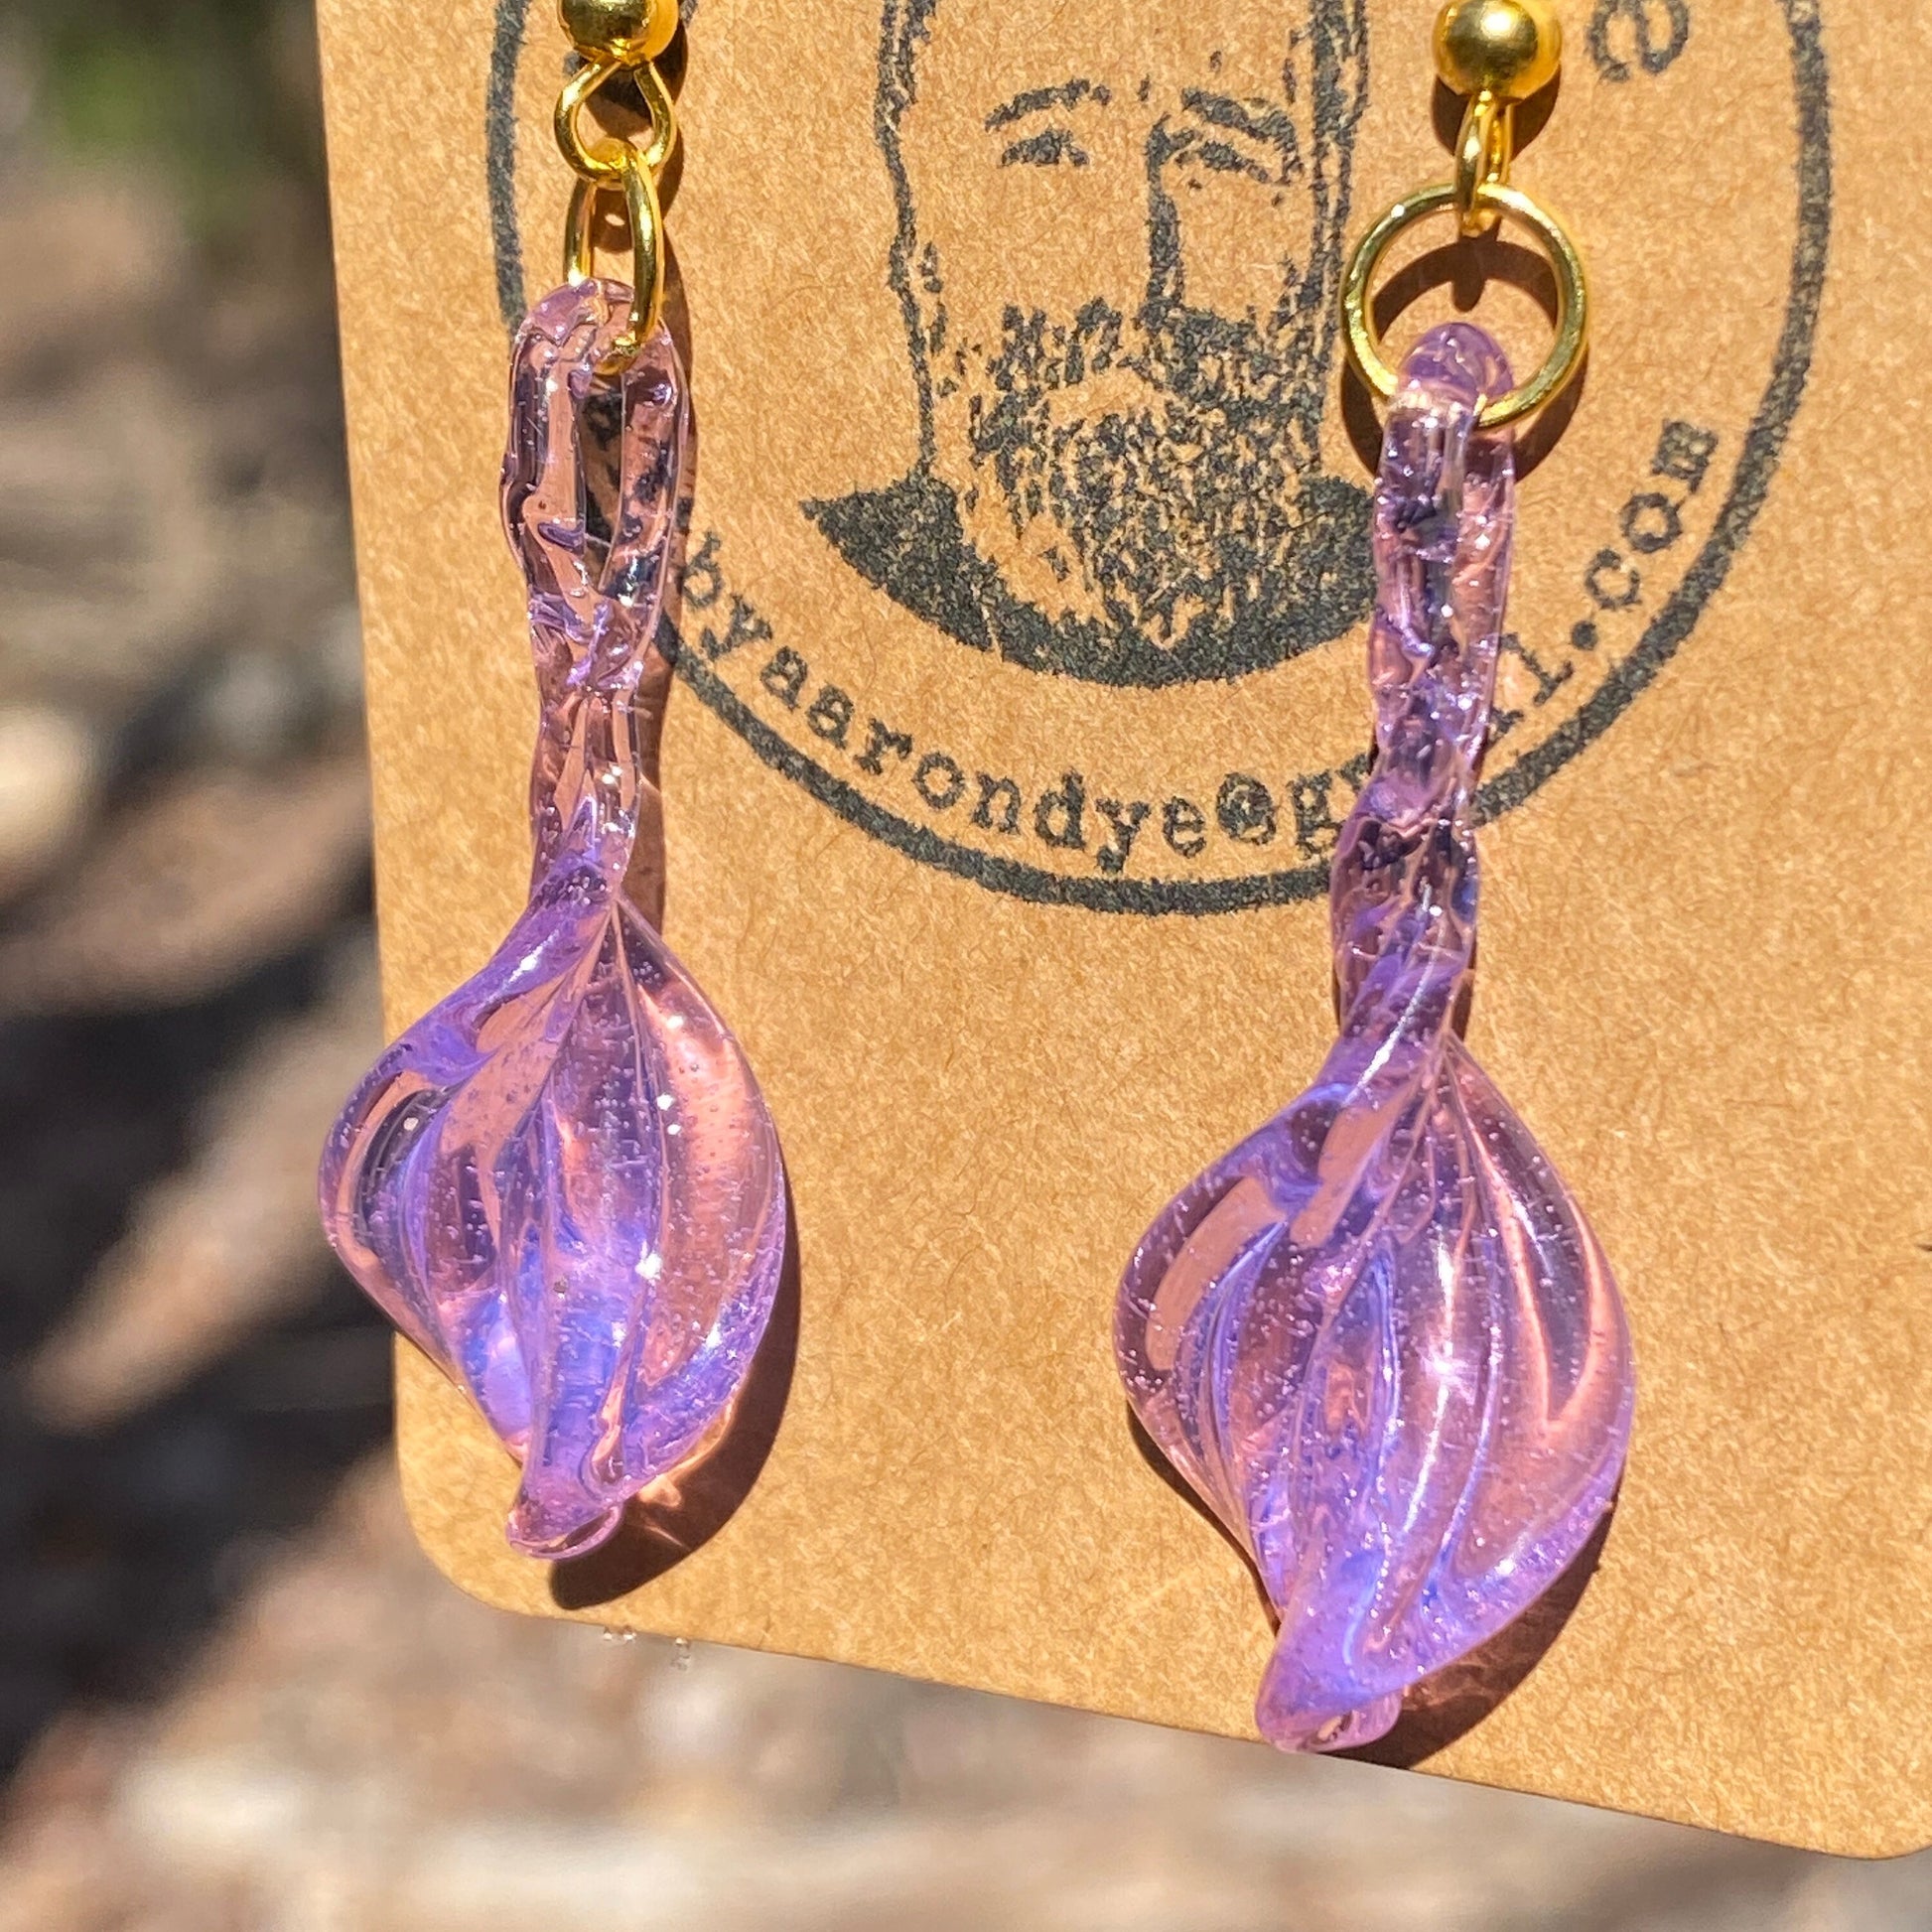 Pink/Purple Blown Glass Earrings - Handmade Jewelry - Hypoallergenic | Art By Aaron Dye